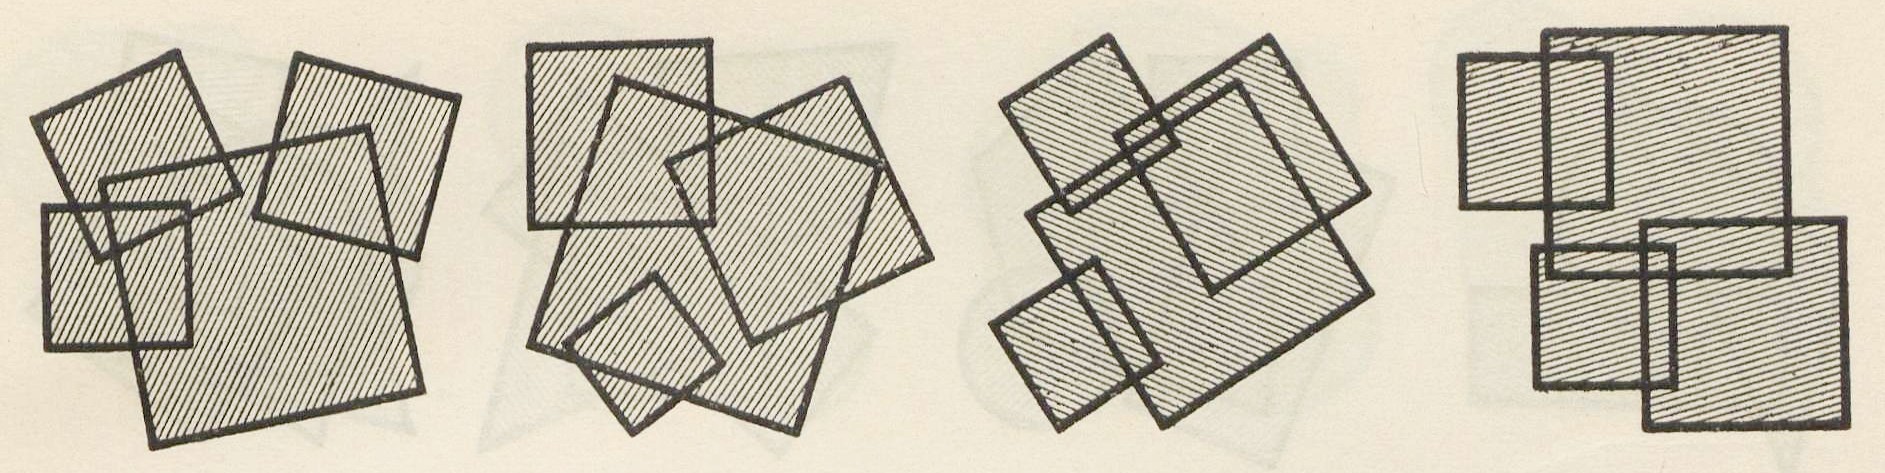 14, 15, 16, 17 Плоскостные композиции из ряда квадратов